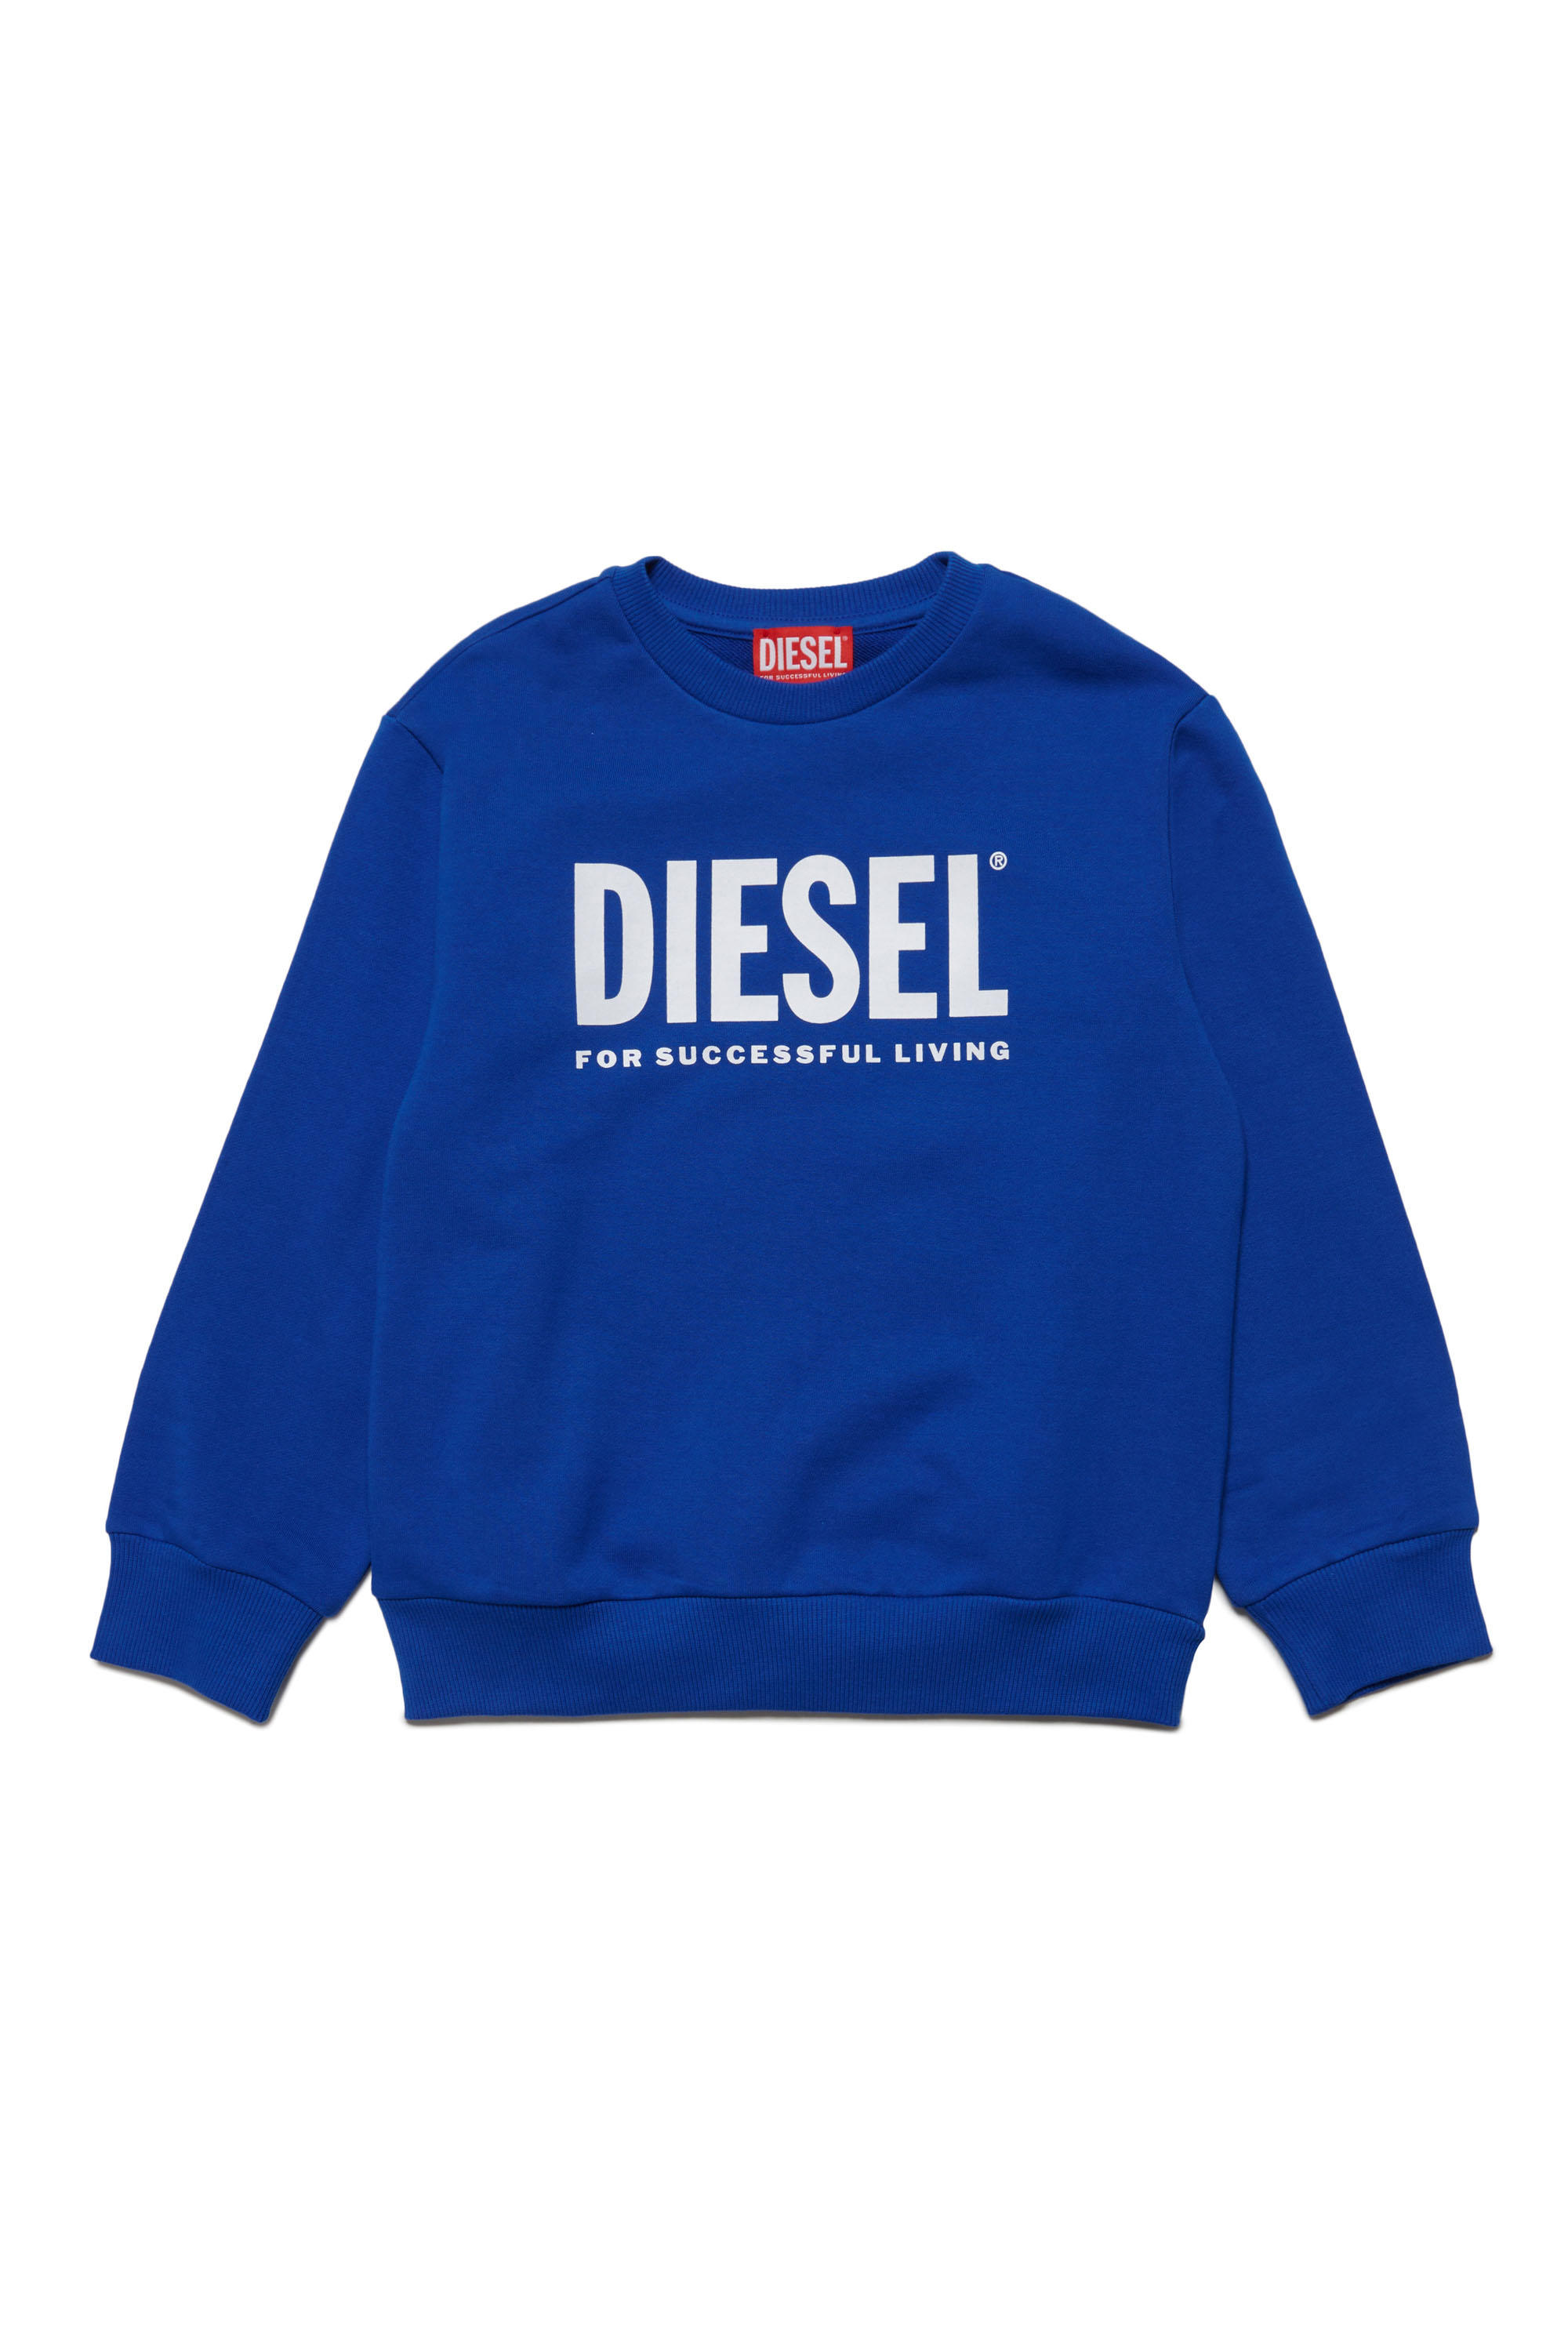 Diesel - LSFORT DI OVER, Blau - Image 1